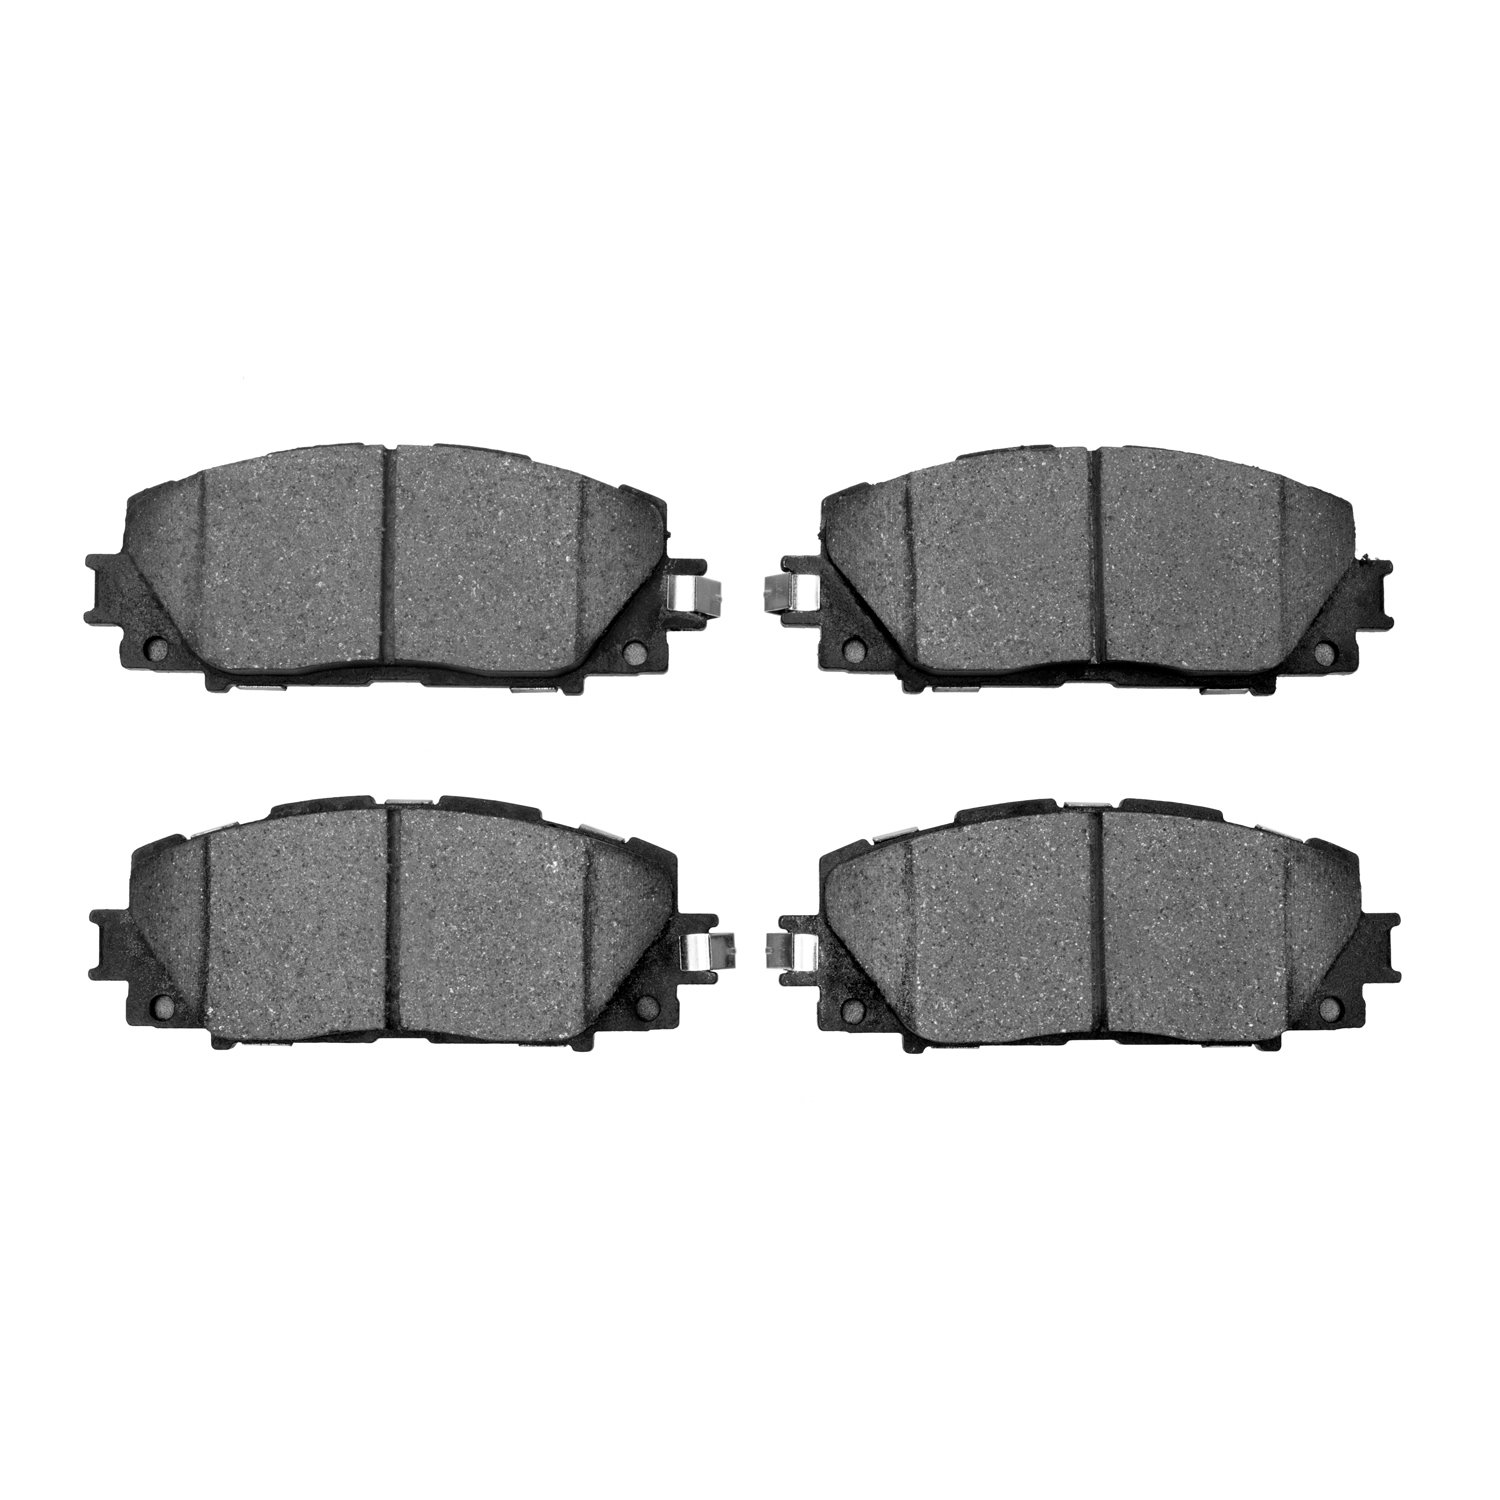 Track/Street Low-Metallic Brake Pads Kit, Fits Select